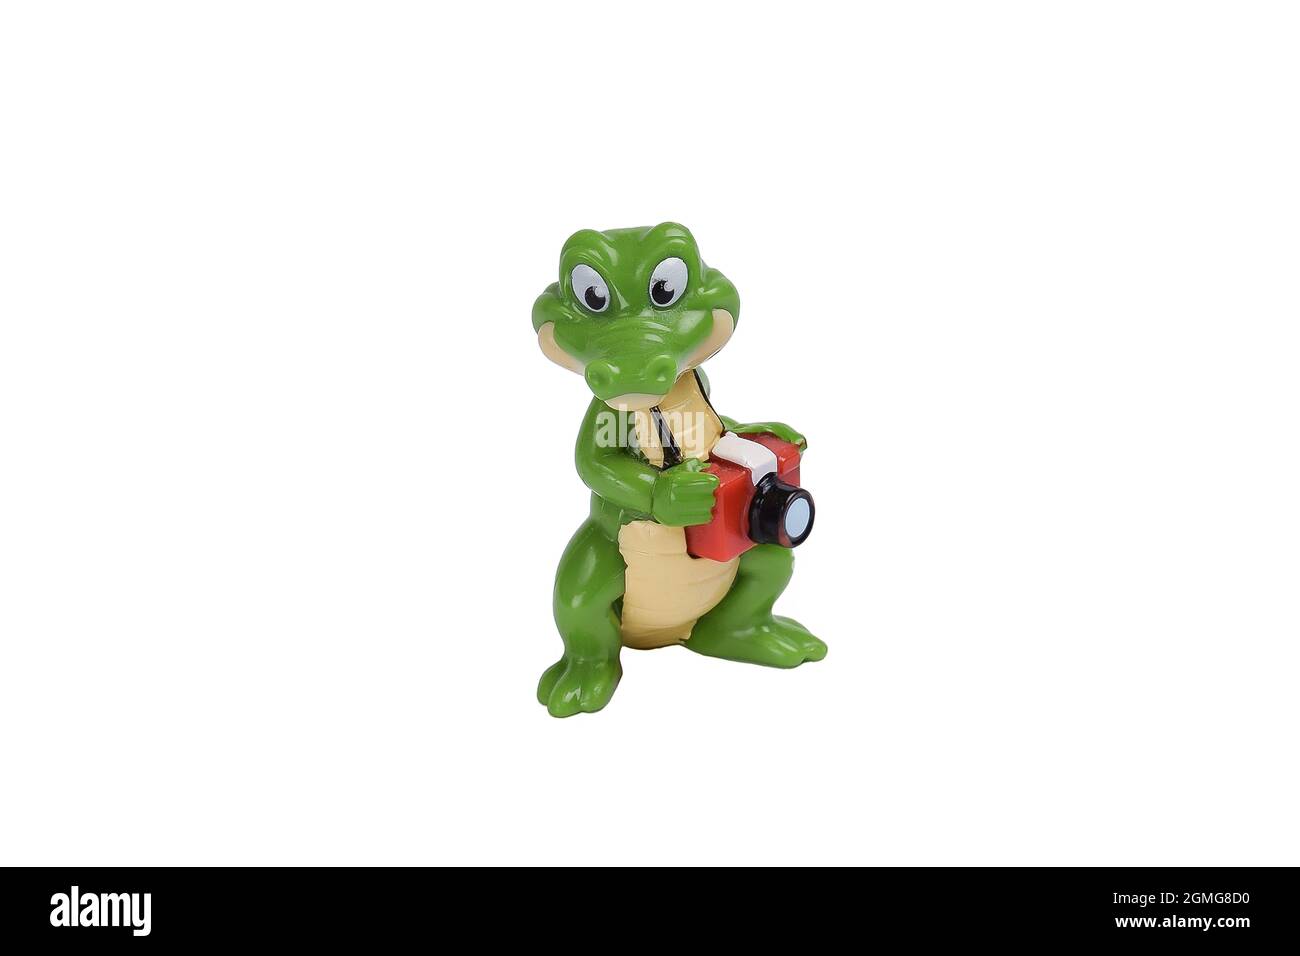 Figurine crocodile de dessin animé jouet avec un appareil photo sur fond blanc sous la coupure Banque D'Images